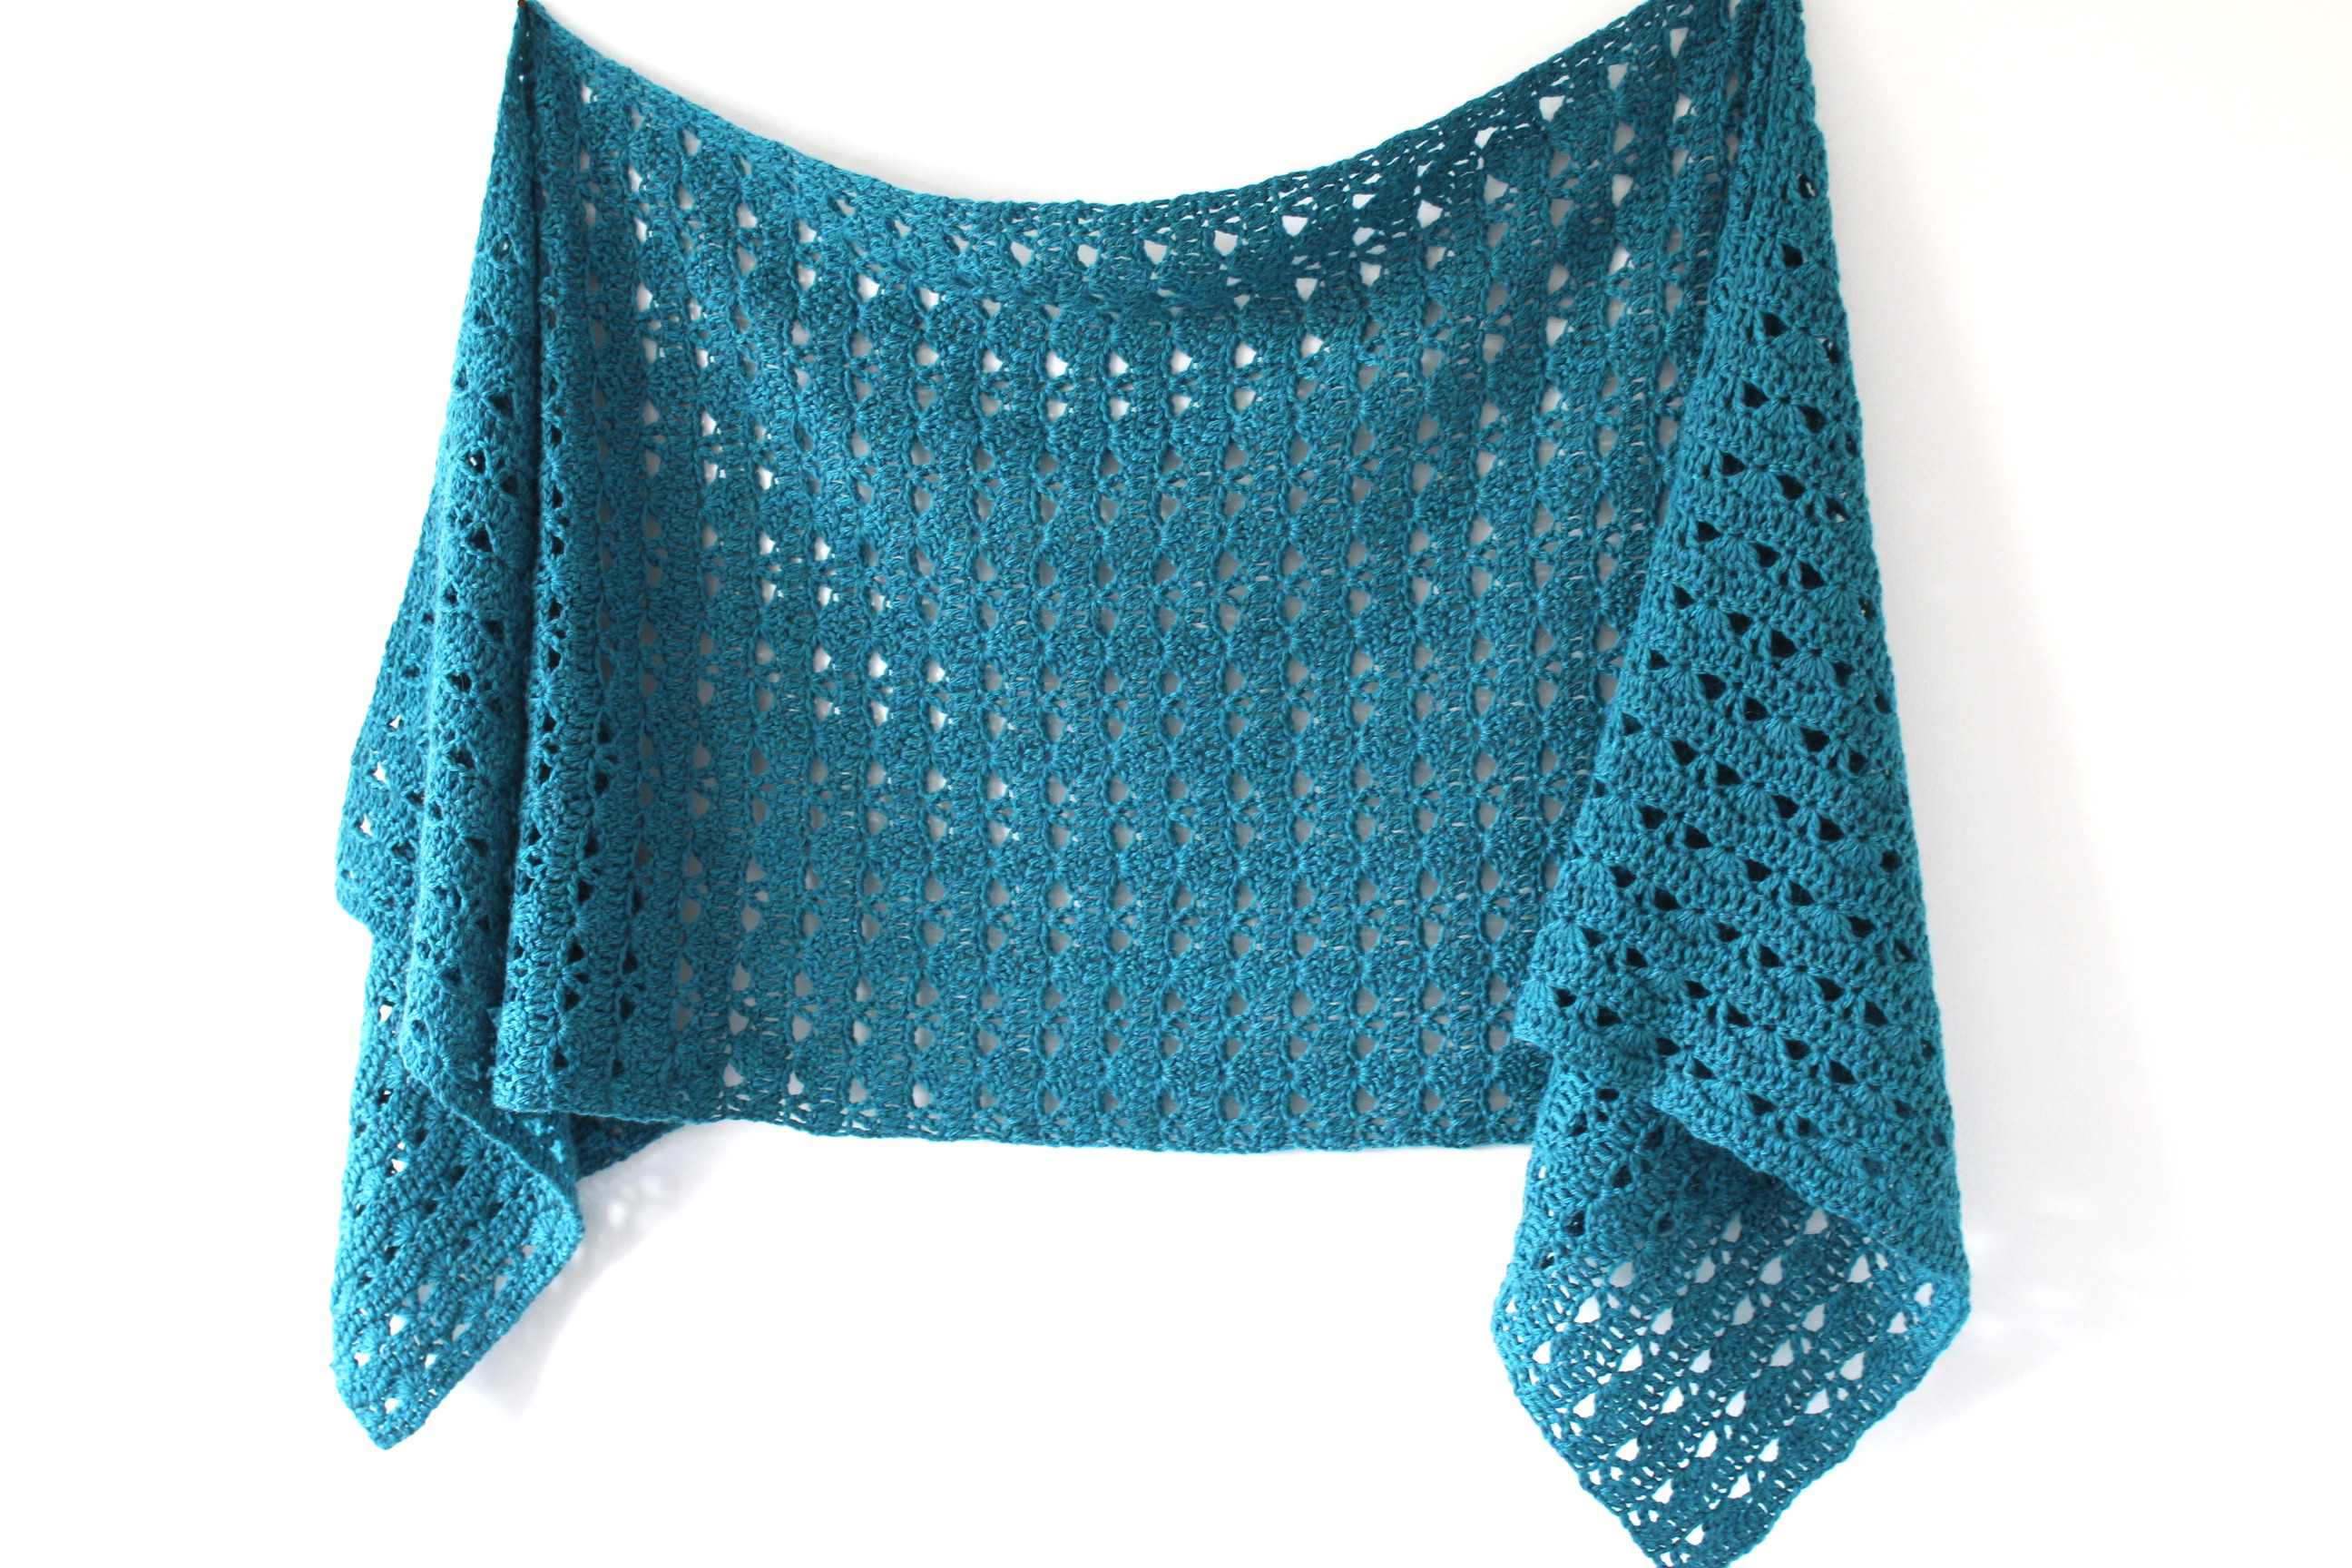 Free Crochet Pattern - Quinley Sideways Shawl